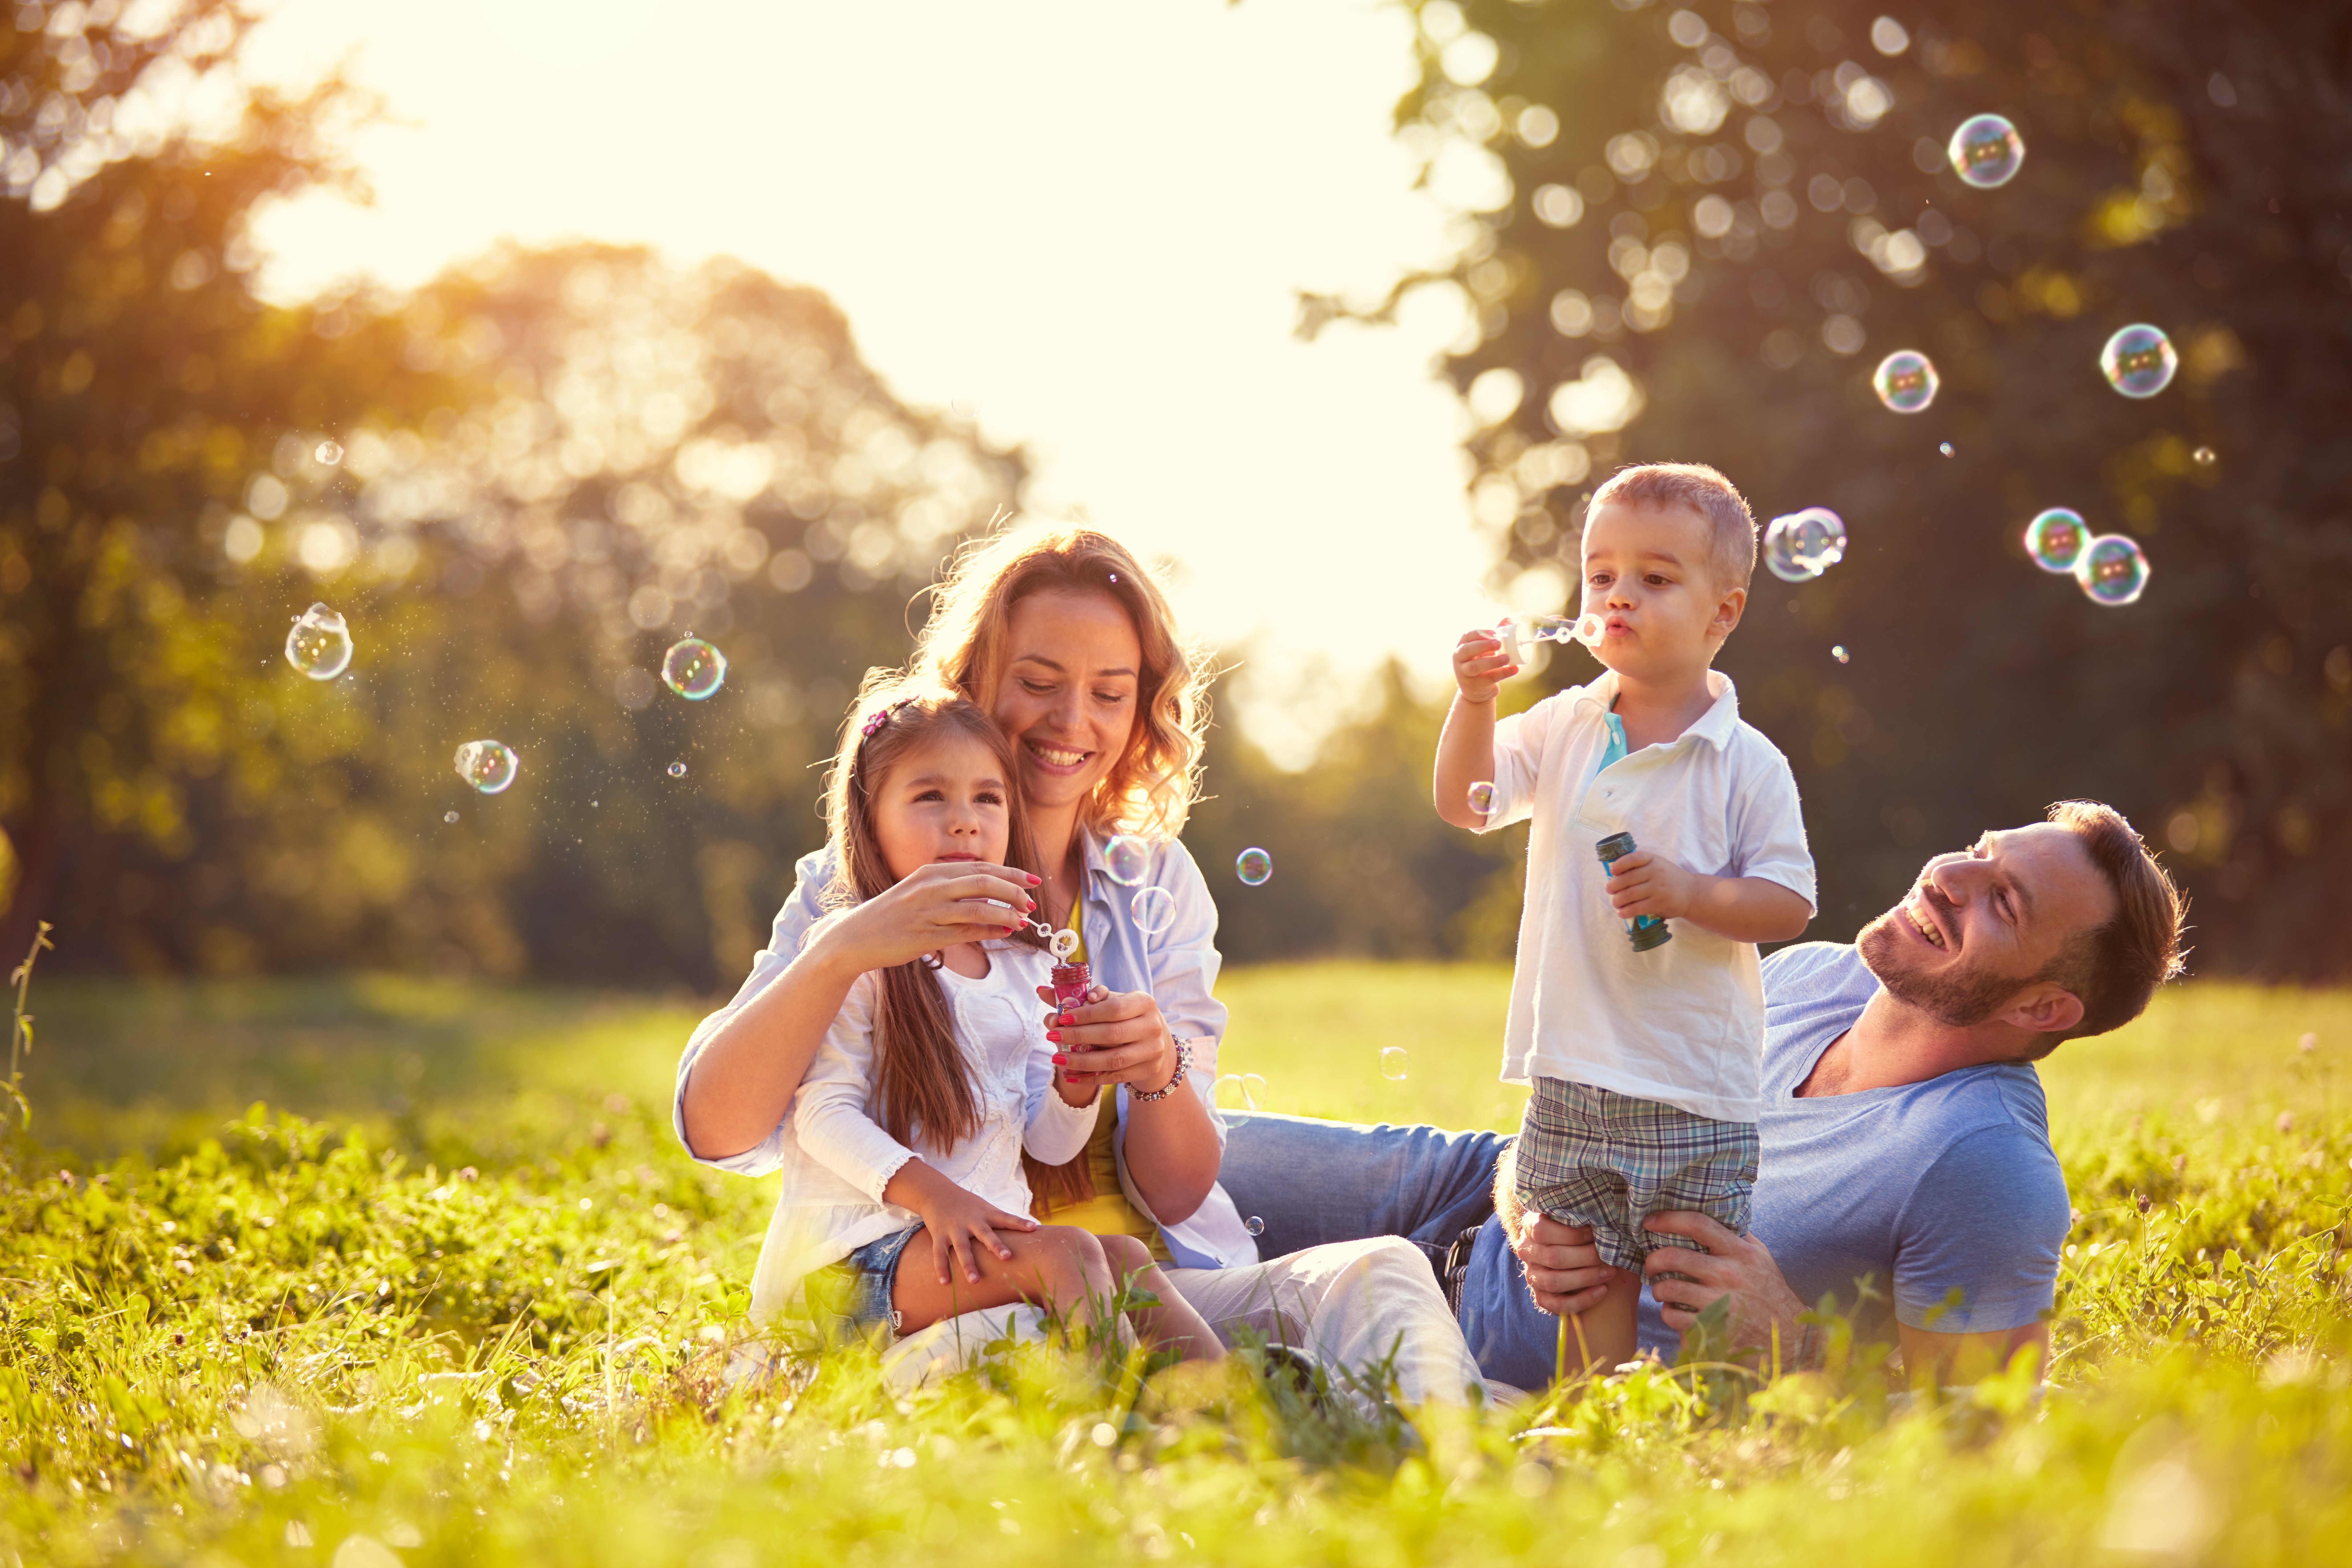 Eine glückliche Familie, die Seifenblasen bläst. | Quelle: Shutterstock